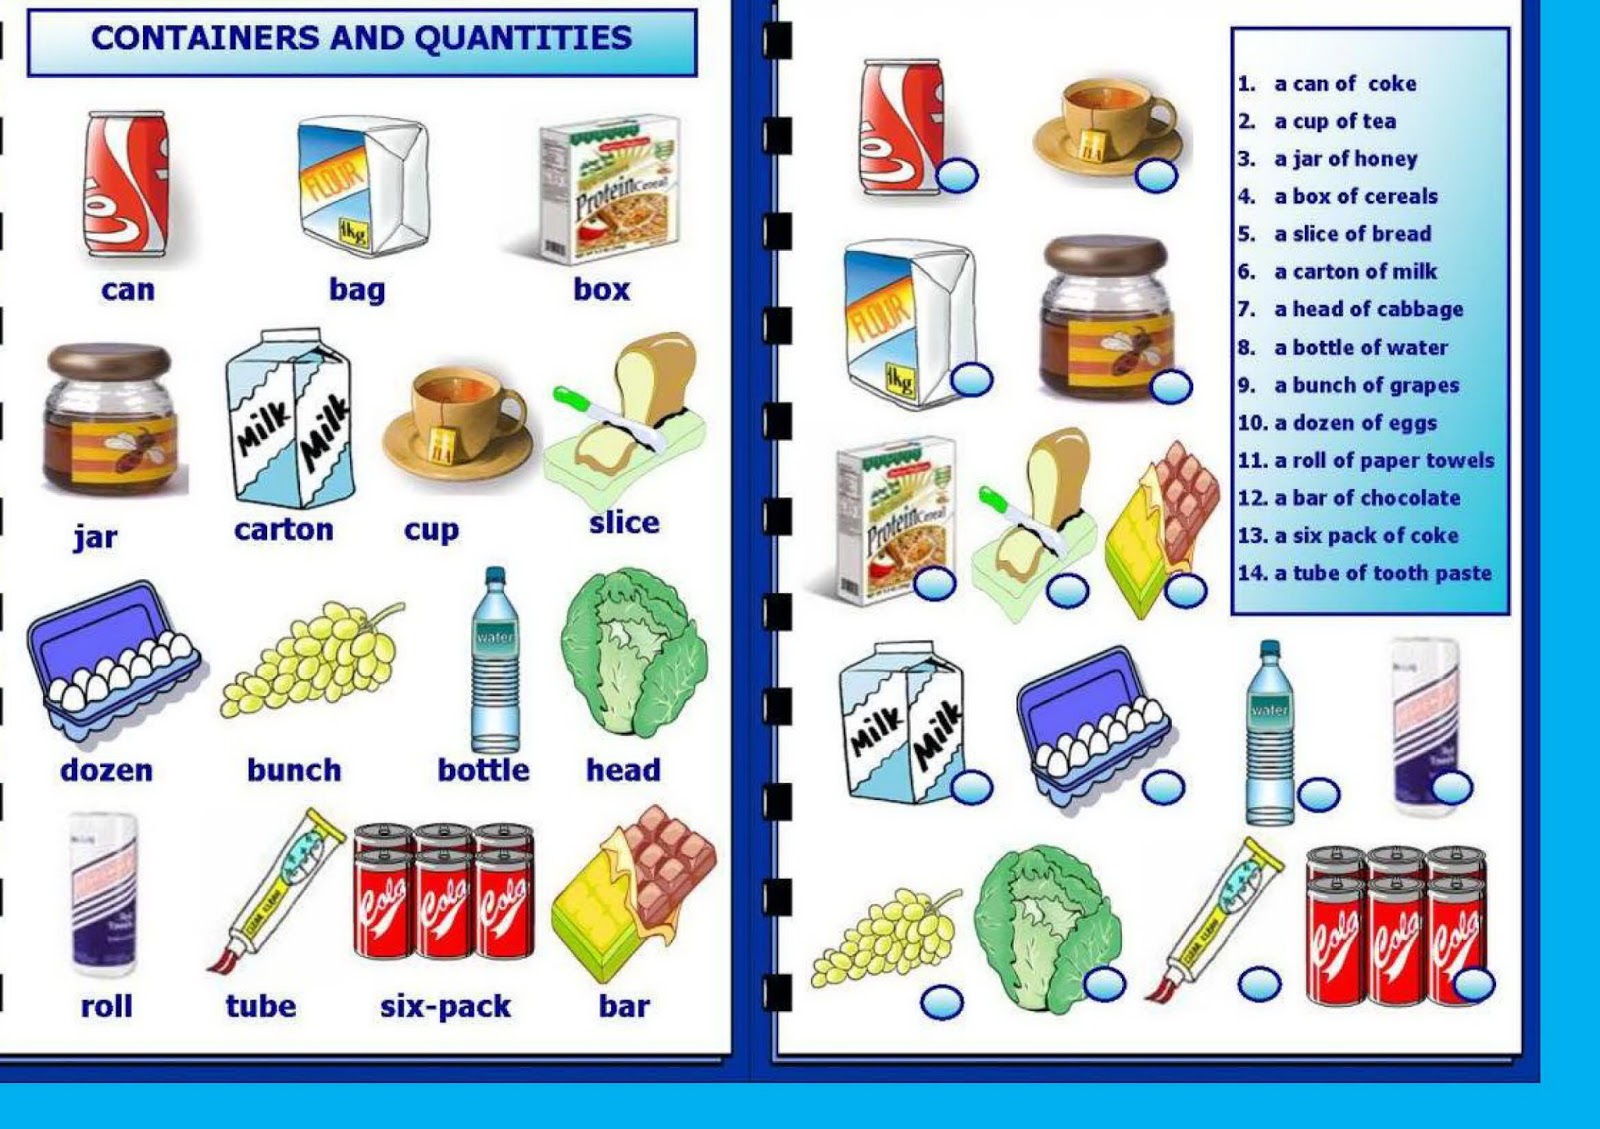 Pear исчисляемое или. Quantities and Containers в английском. Уgаrковки на английском. Упаковки на английском языке. Упаковки продуктов на английском.